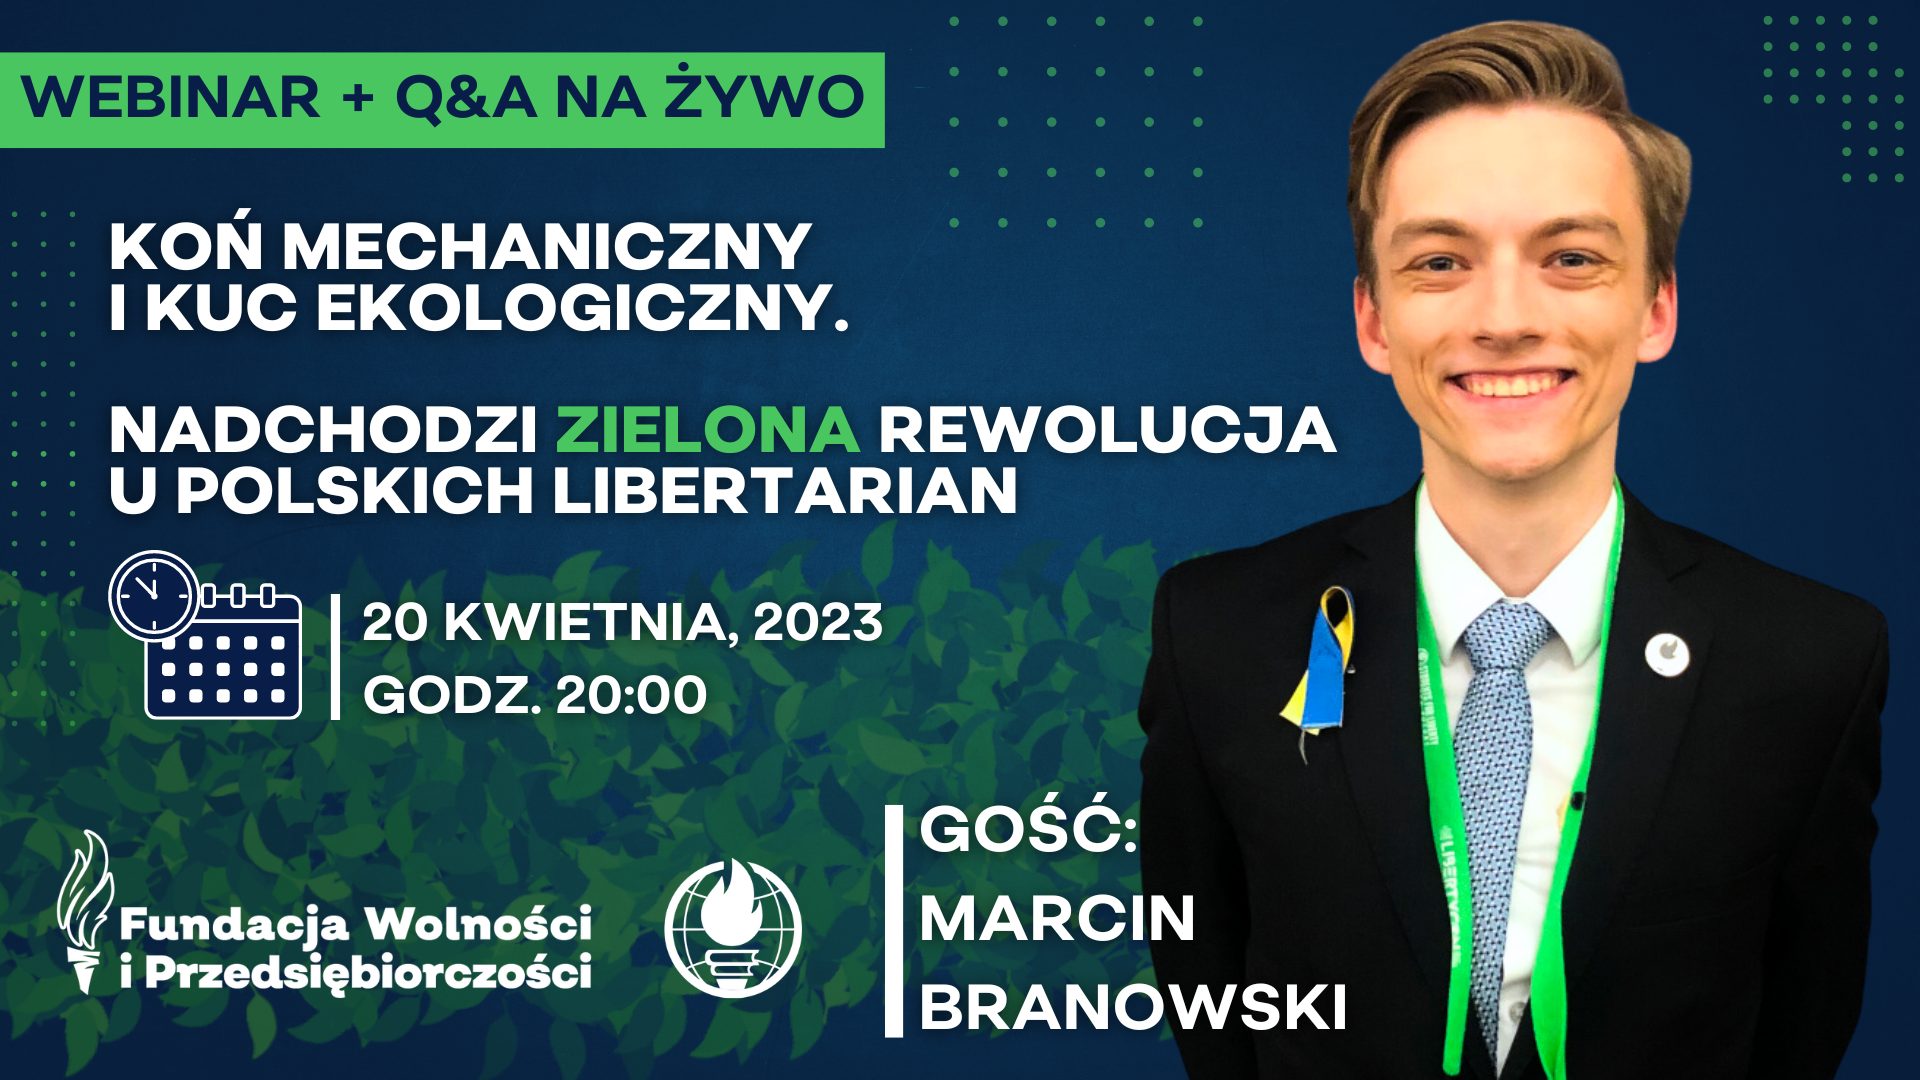 Koń mechaniczny i kuc ekologiczny. Nadchodzi zielona rewolucja u polskich libertarian.